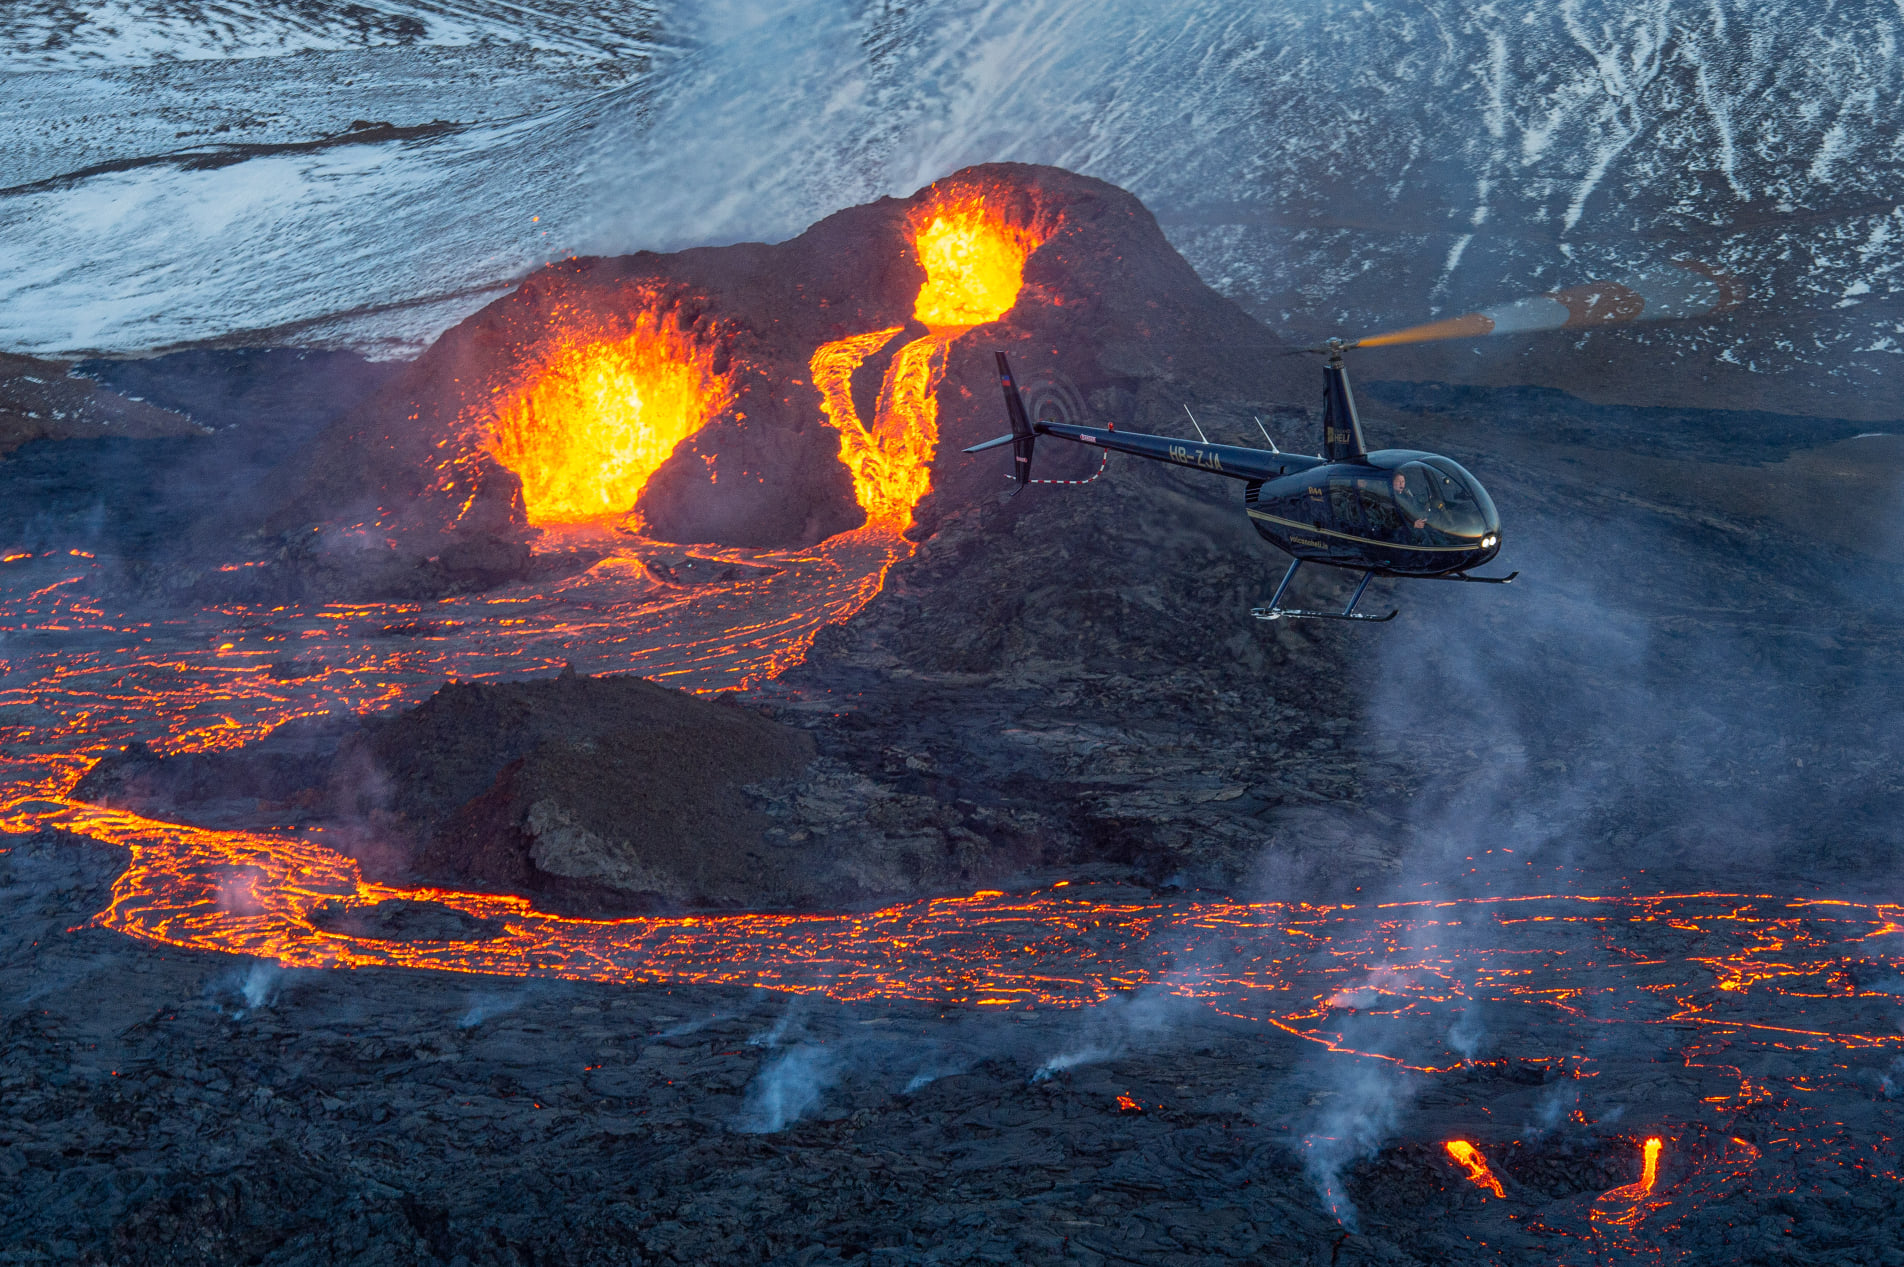 Vol en hélicoptère d'une heure avec atterrissage sur le site d'éruption du volcan Geldingadalur 2021